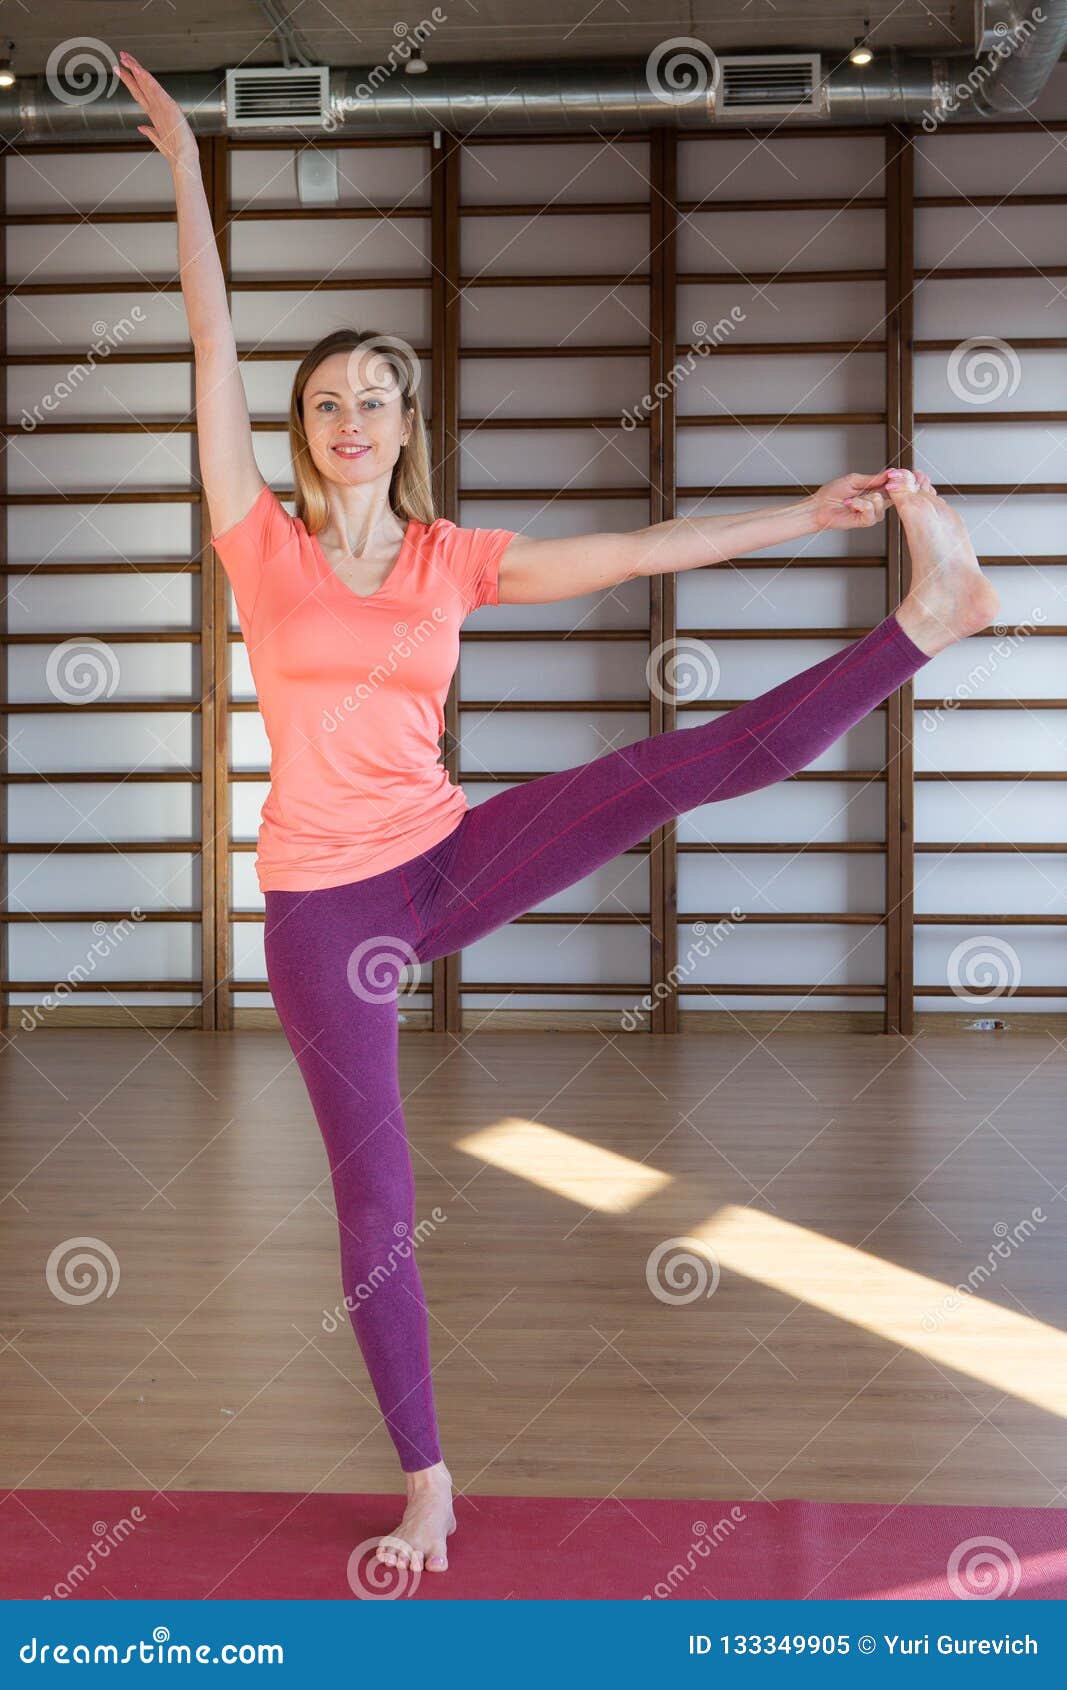 https://thumbs.dreamstime.com/z/ropa-de-deportes-blanca-que-lleva-la-mujer-bonita-tranquila-joven-se-resuelve-haciendo-ejercicio-yoga-o-los-pilates-aislado-en-el-133349905.jpg